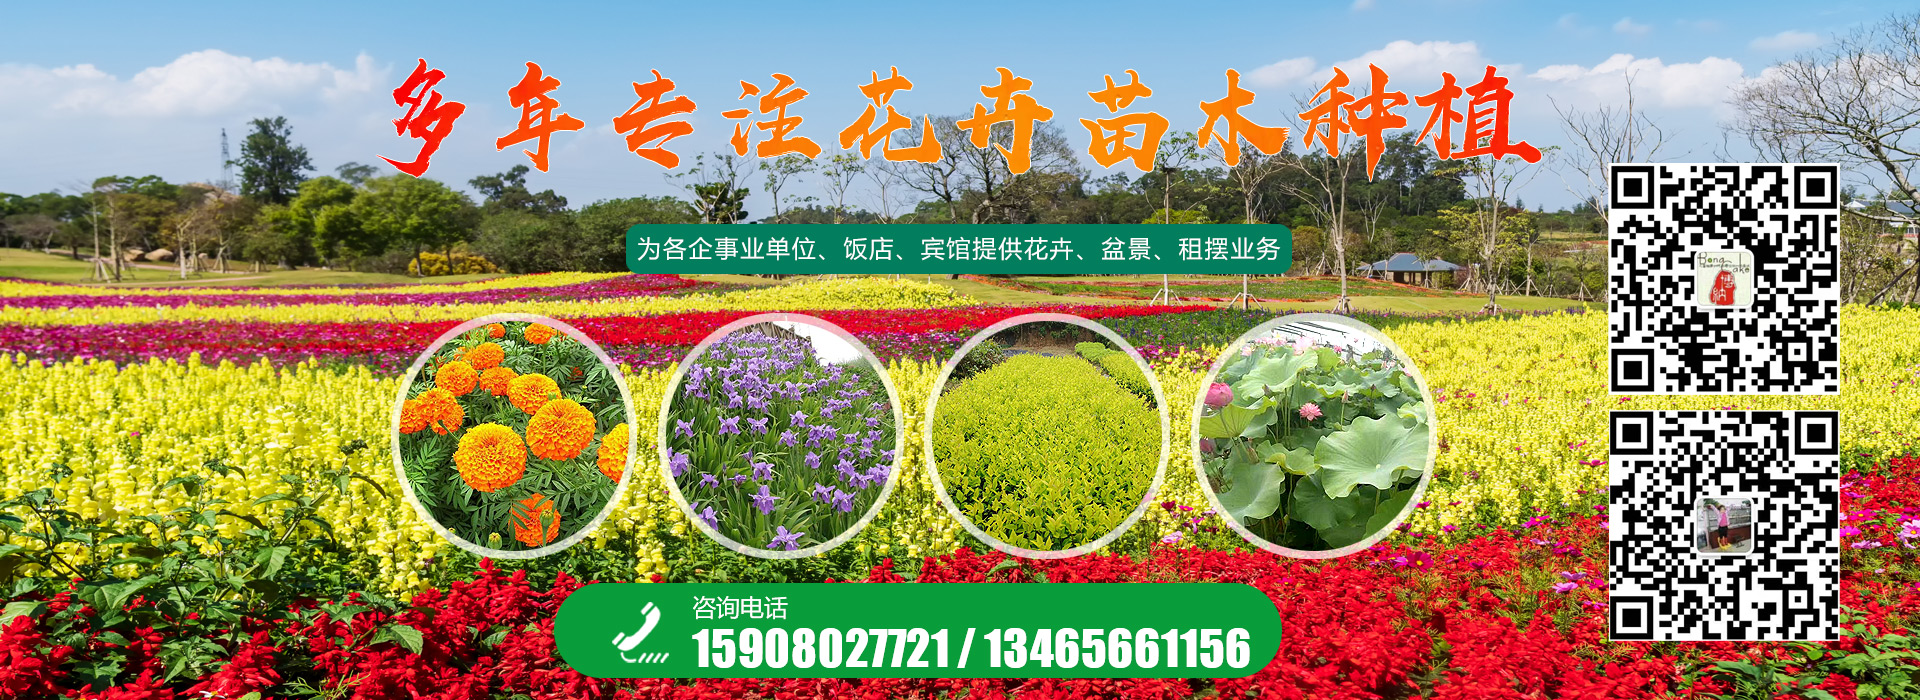 青州市国樾生态农业有限公司